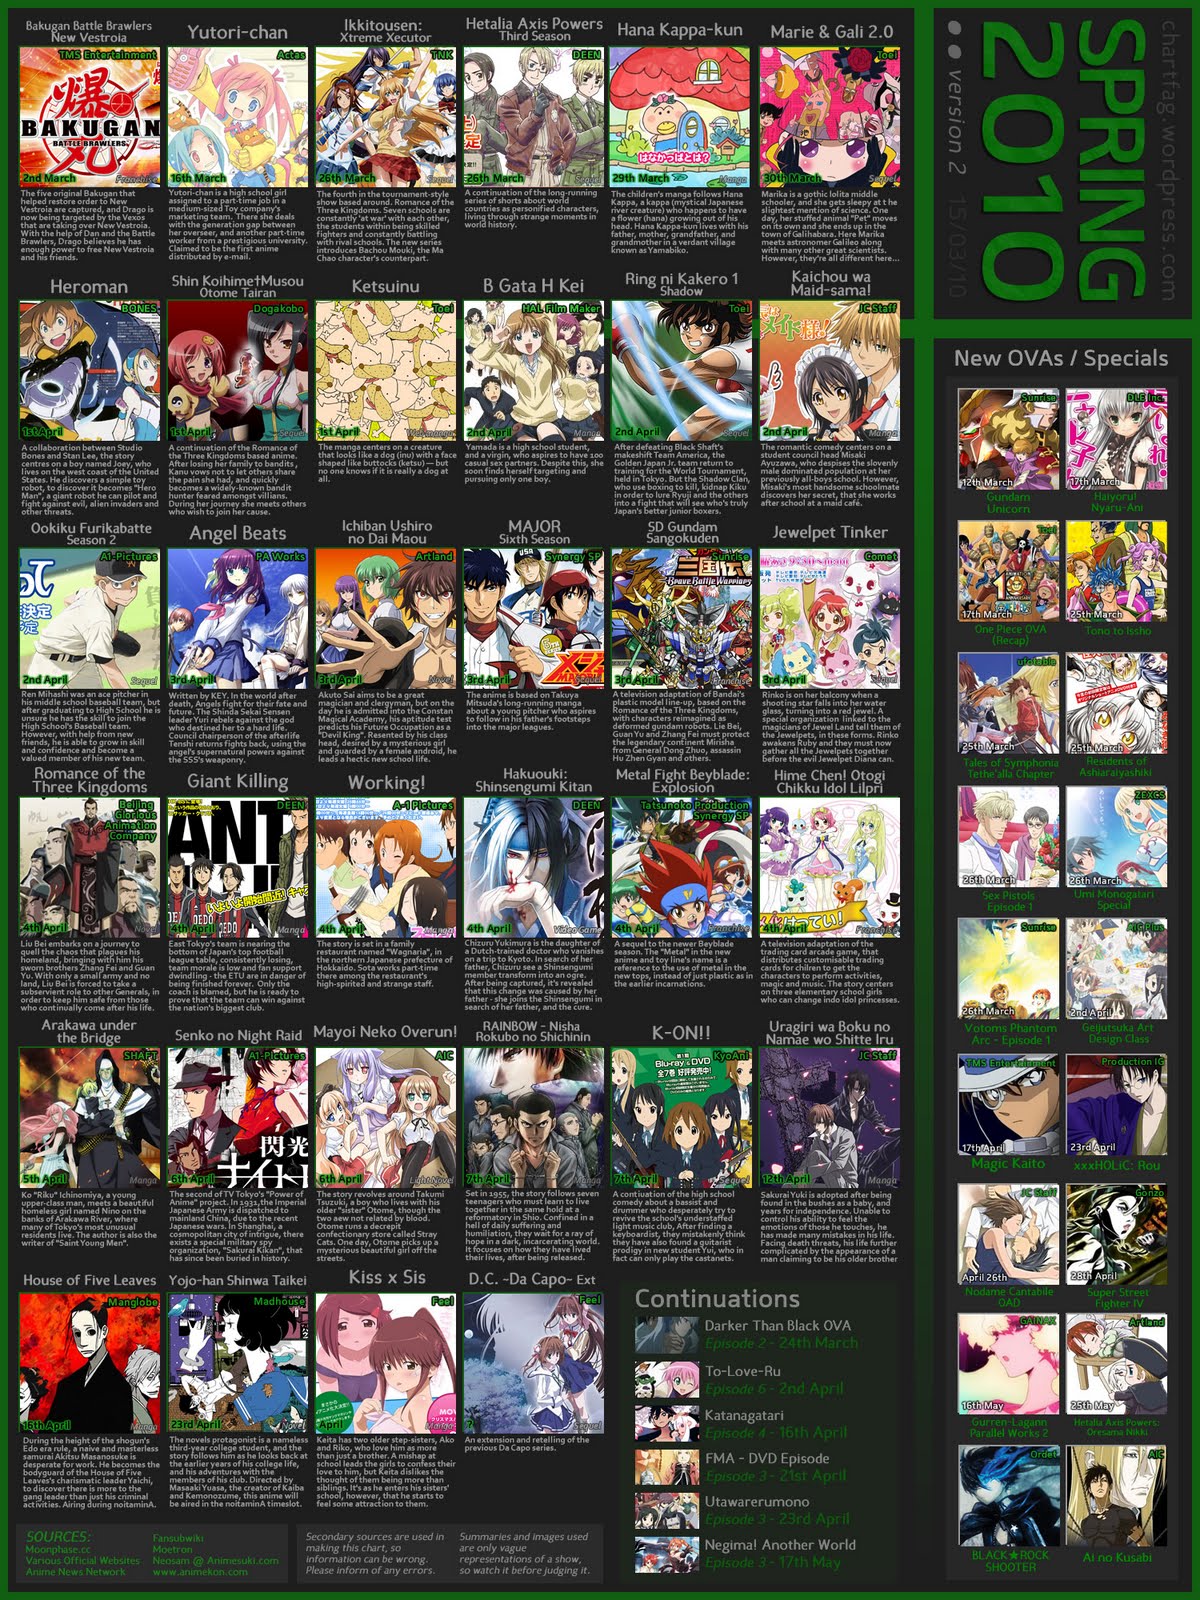 ปฏิทิน anime ปีต่างๆครับ Anime+Spring+2010+lineup+v2